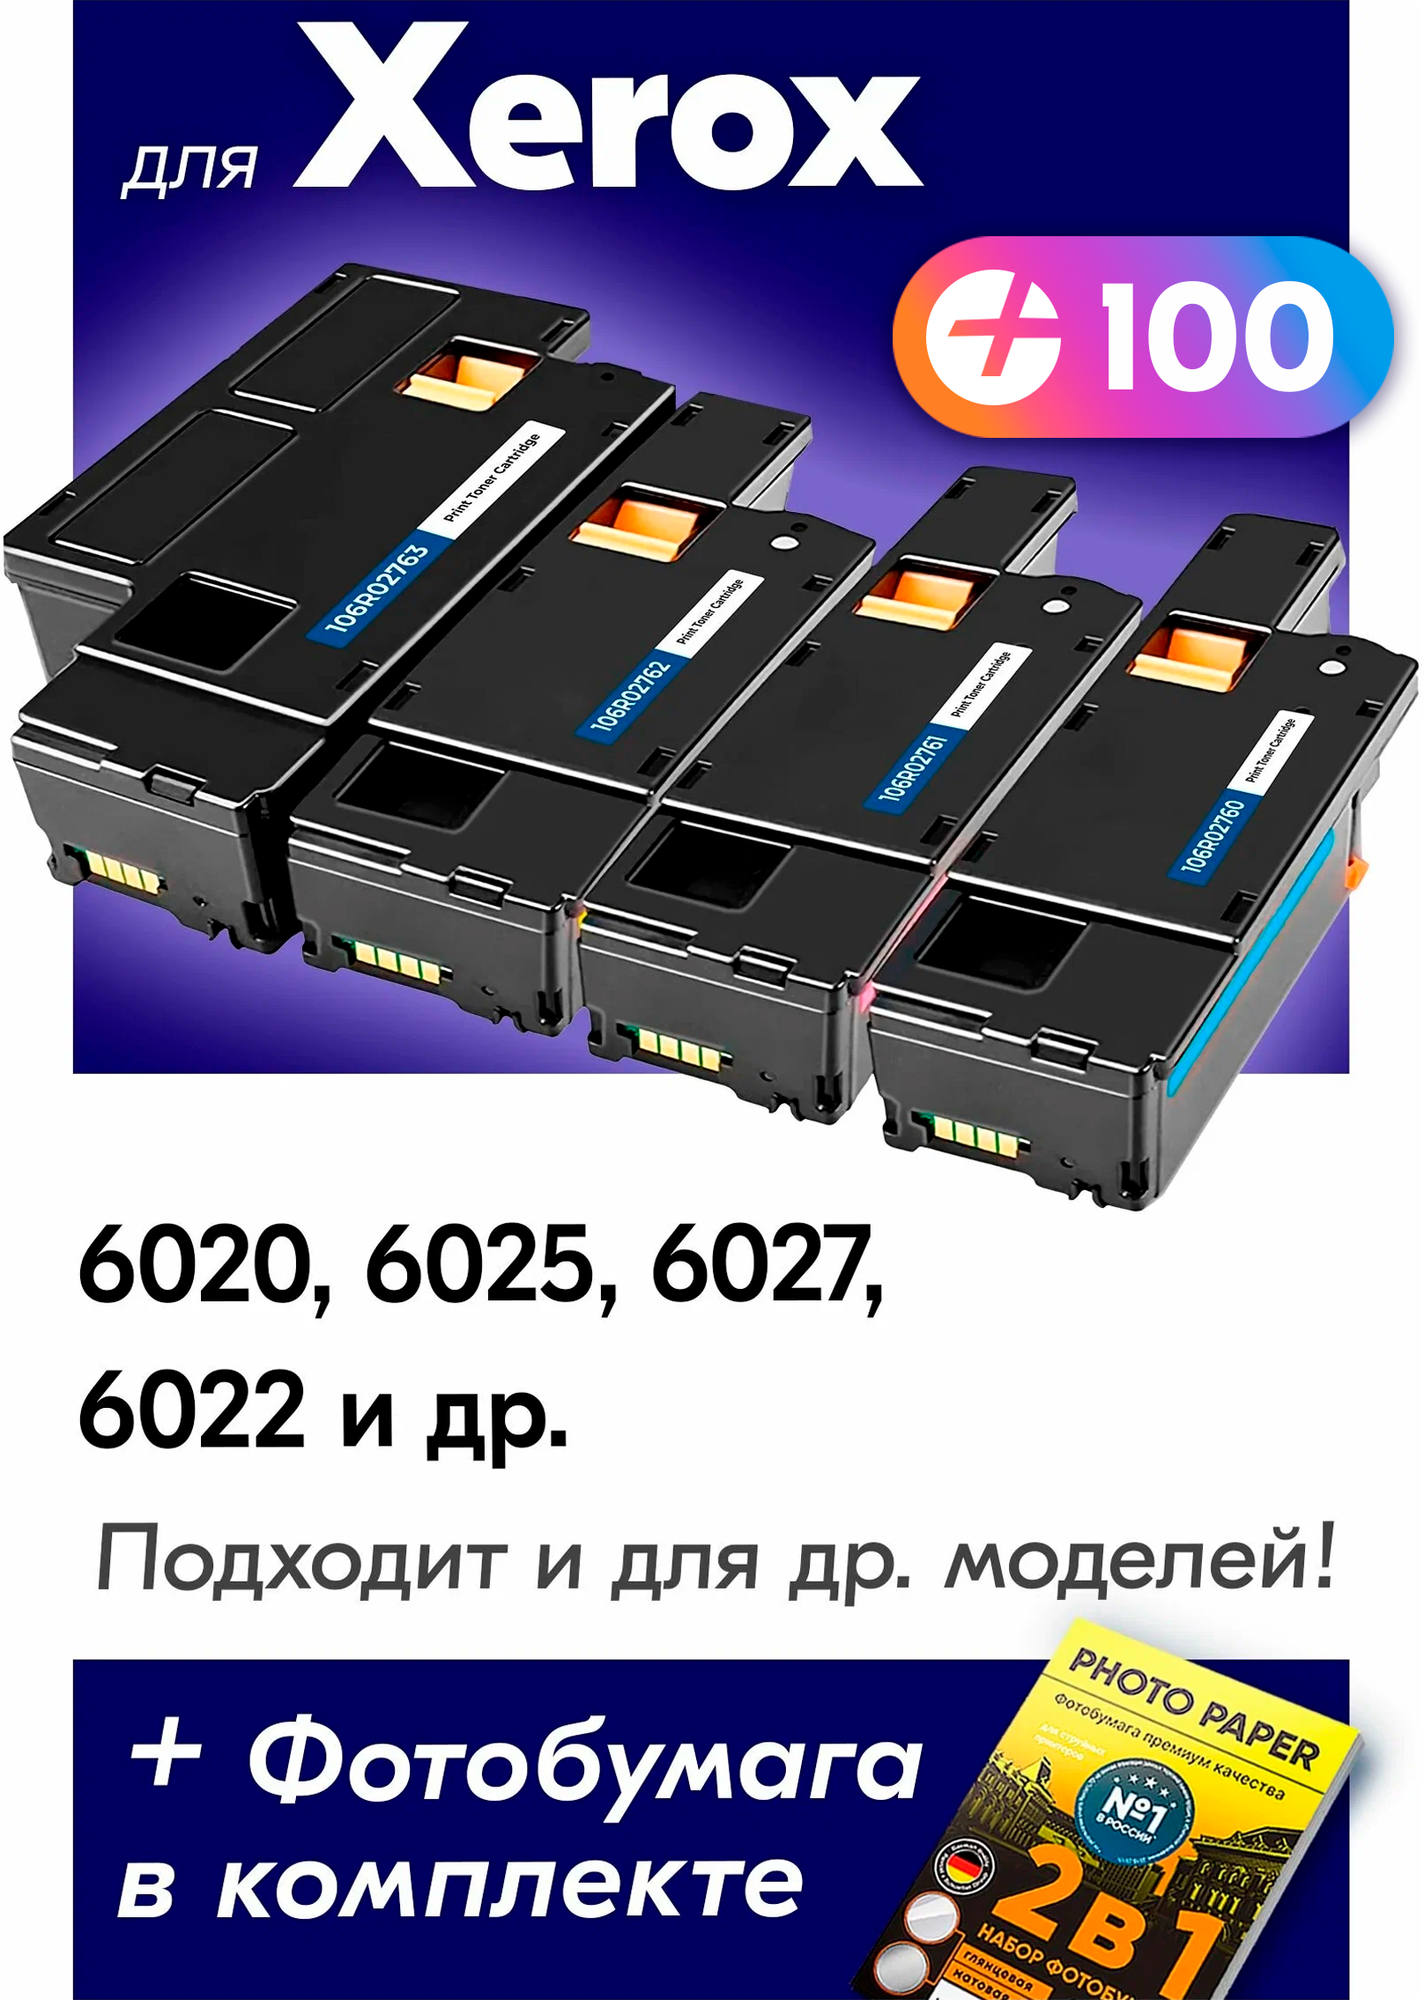 Лазерные картриджи для Xerox 106R0276, Xerox Phaser 6020, 6025, 6027, 6022 и др. с краской (тонером) комплект новый заправляемый, 2000 копий, 4 шт.